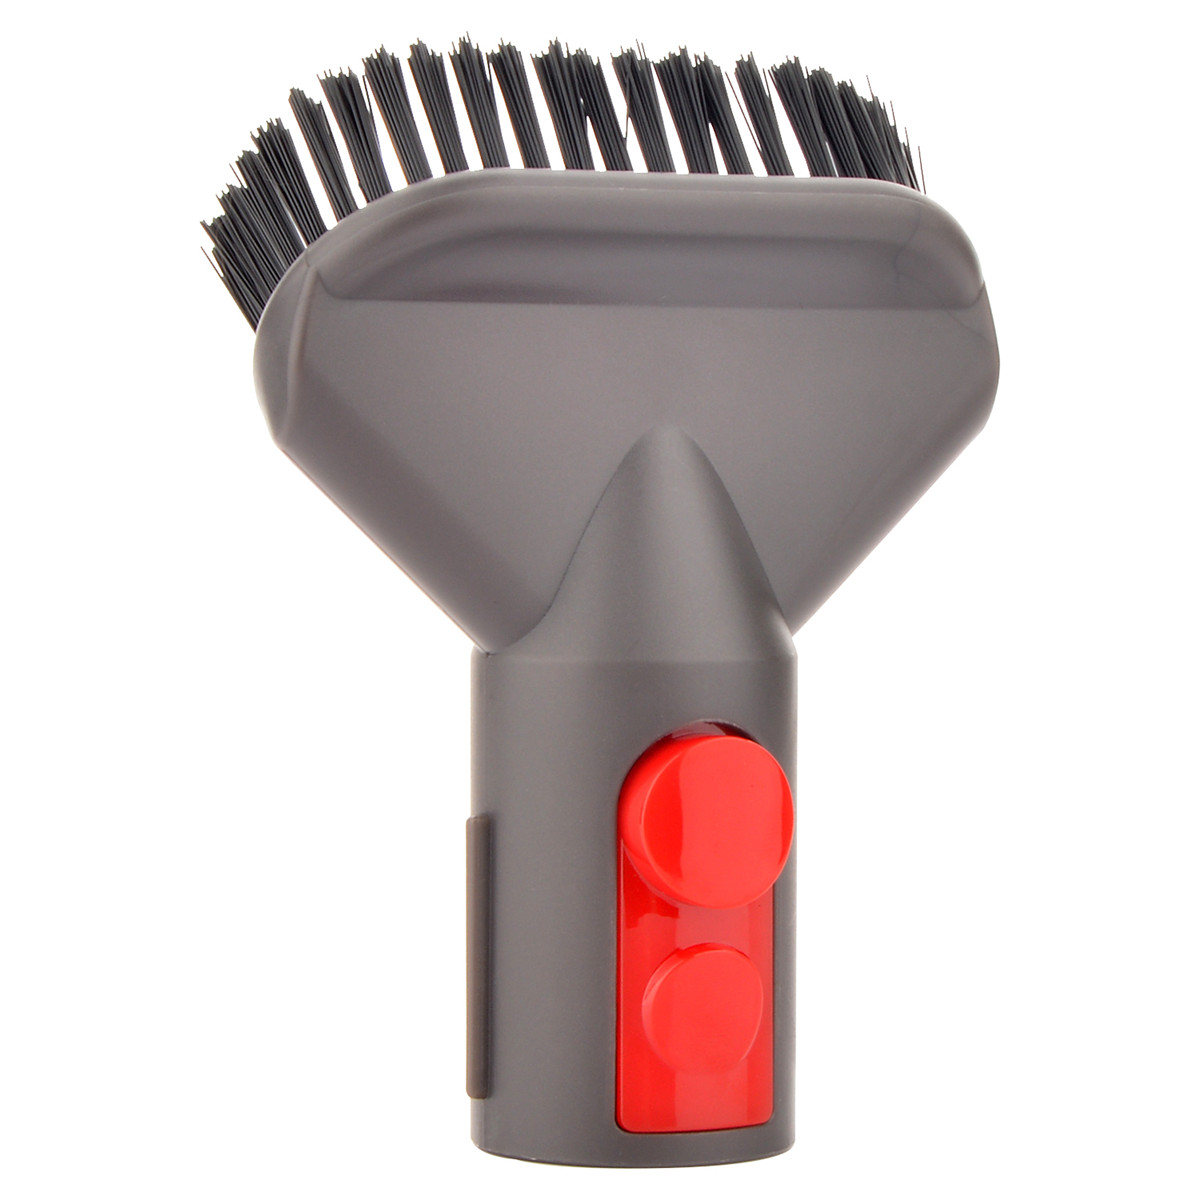 Vacuum Cleaner Brush Head Set for For Dyson V7 V8 V10 Storage Rack Cleaning Brush 7